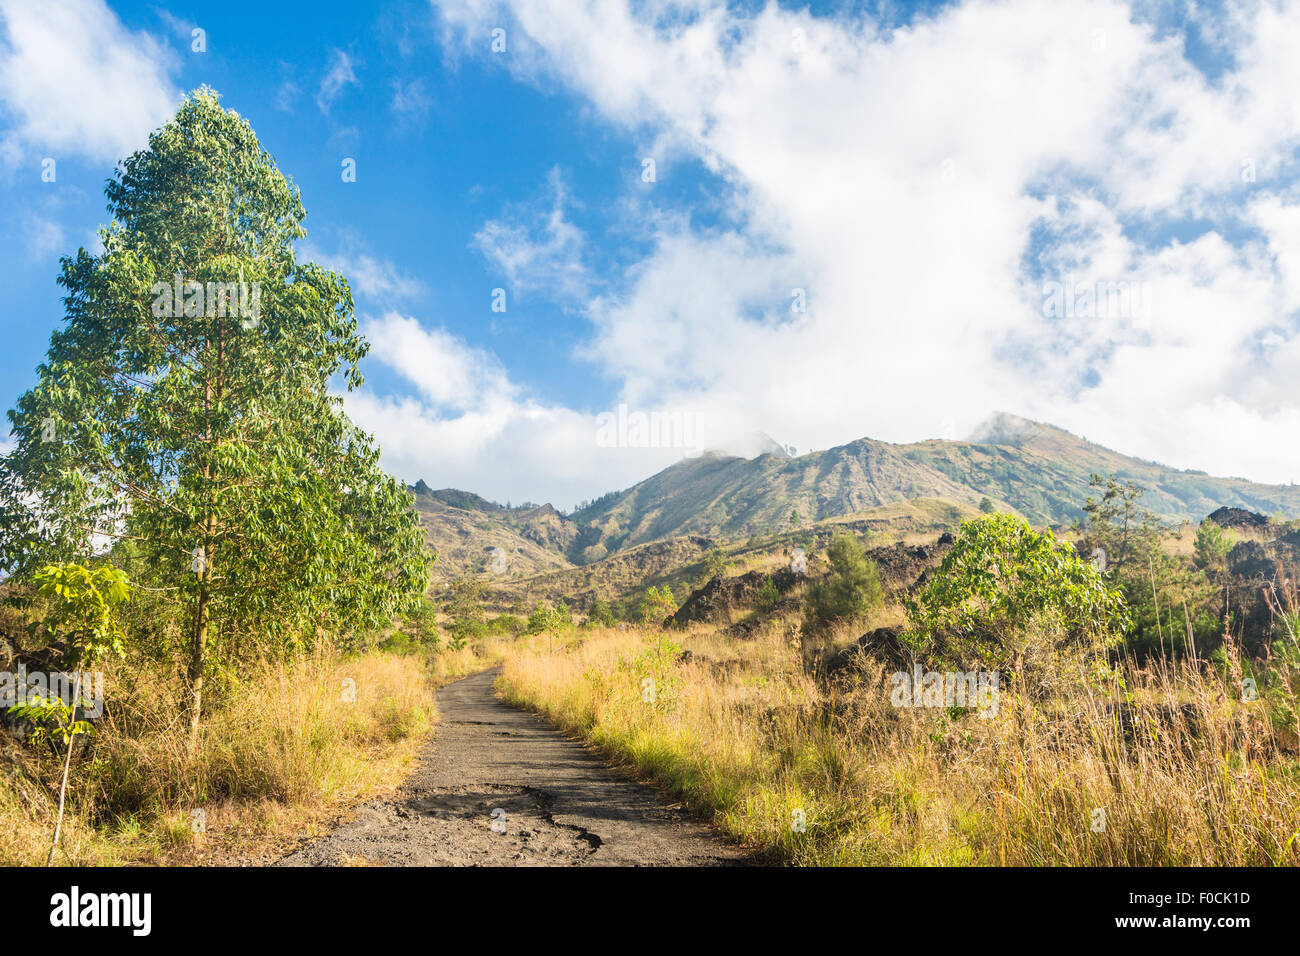 Sul sentiero che conduce alla vetta del vulcano Batur vicino al villaggio di Kintamani a Bali, in Indonesia Foto Stock